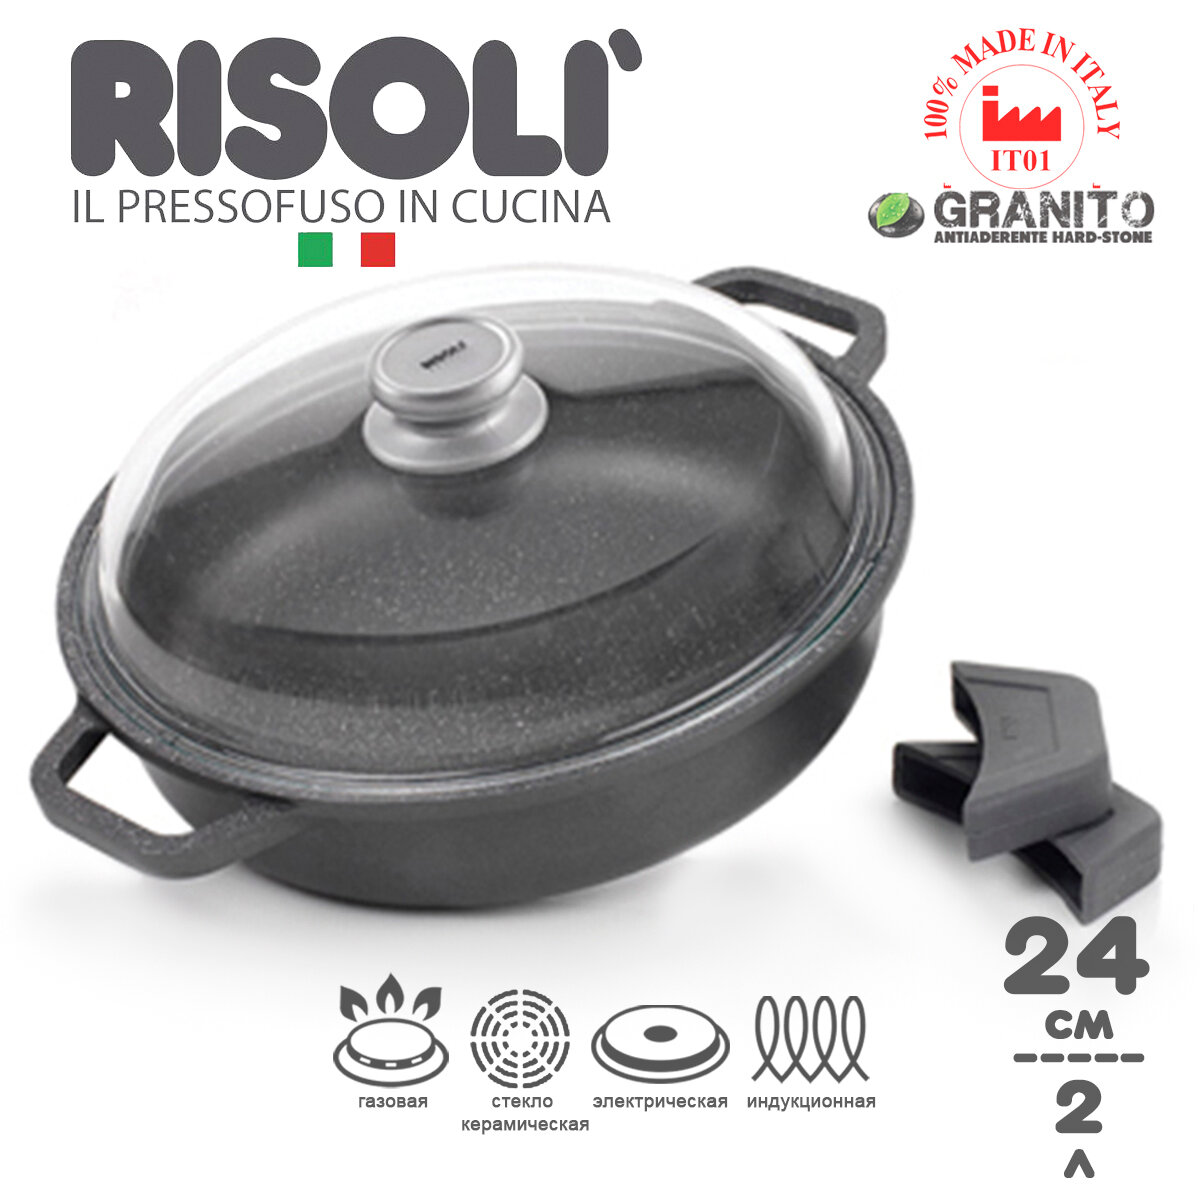 Сотейник Risoli 'Granito' индукционный с антипригарным покрытием с крышкой, 24см